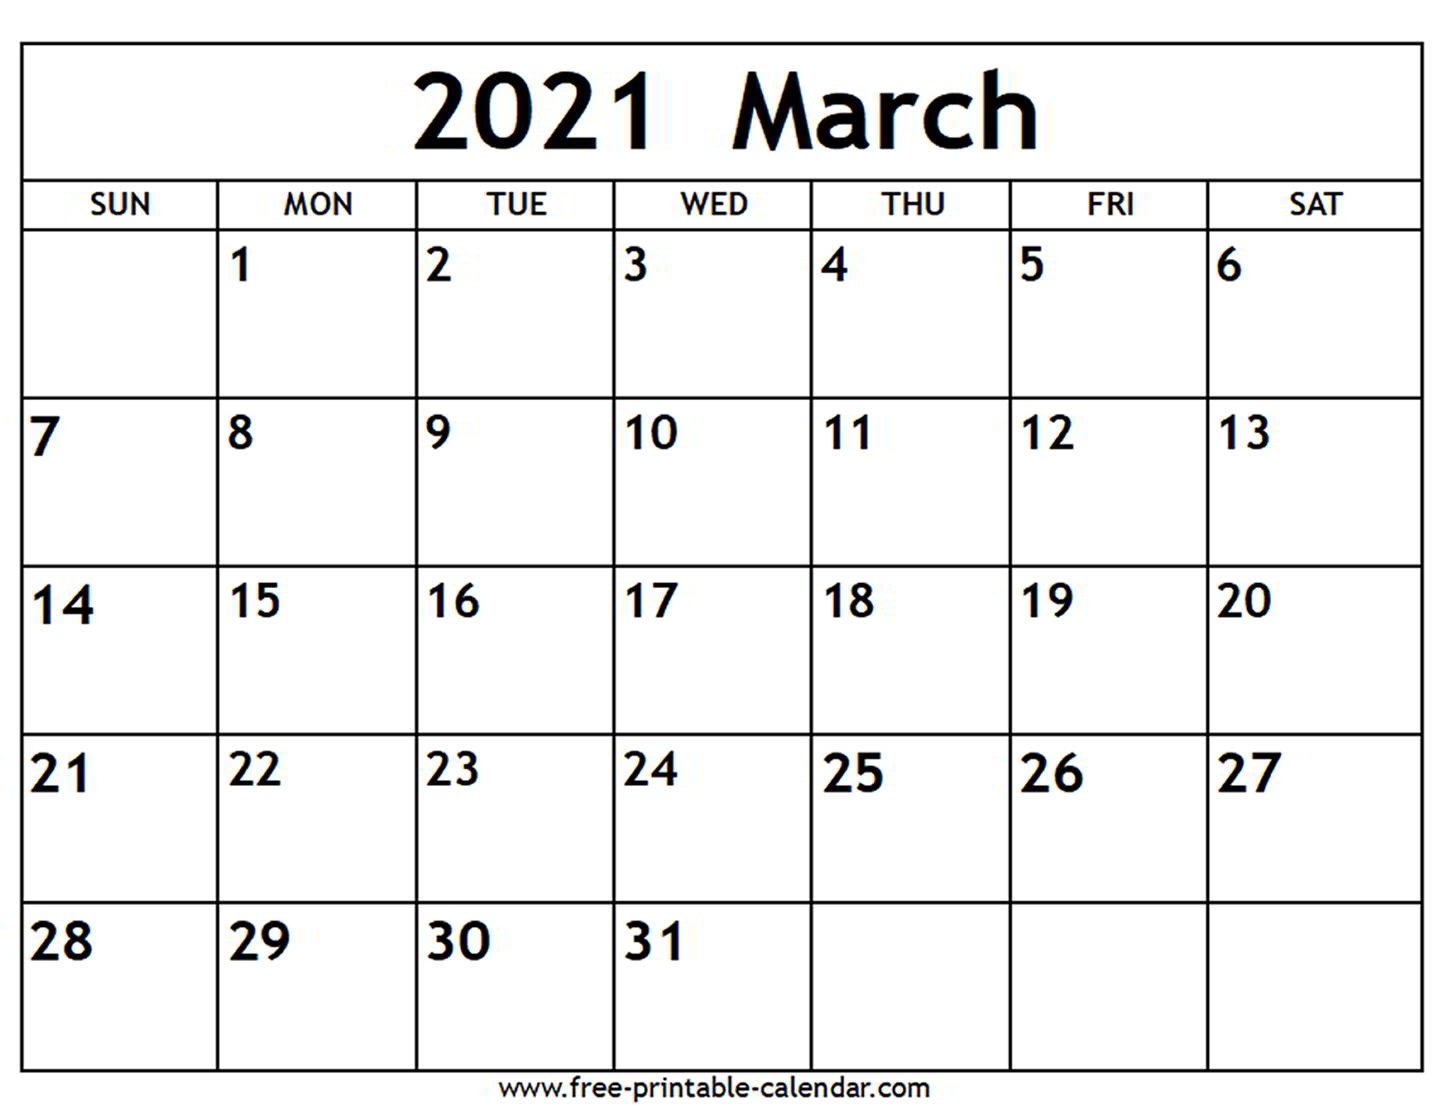 March 2021 Calendar - Free-Printable-Calendar-March Calendar 2021 Printable